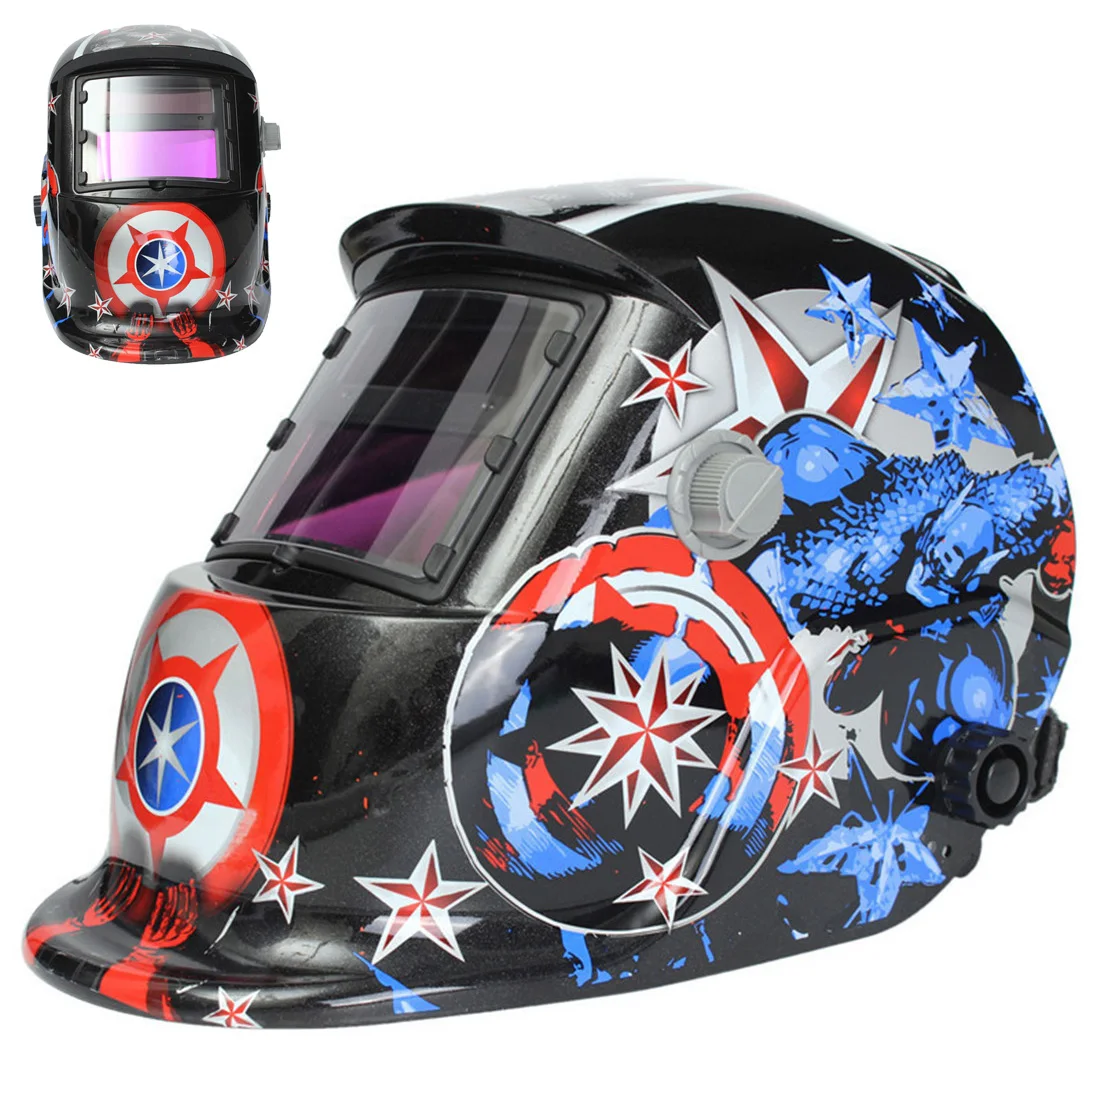 

Solar Weld Mask Electro Welding Auto Darkening Welding Helmet Head-Mounted Goggles Argon Arc Welding Cap / Protective Helmets